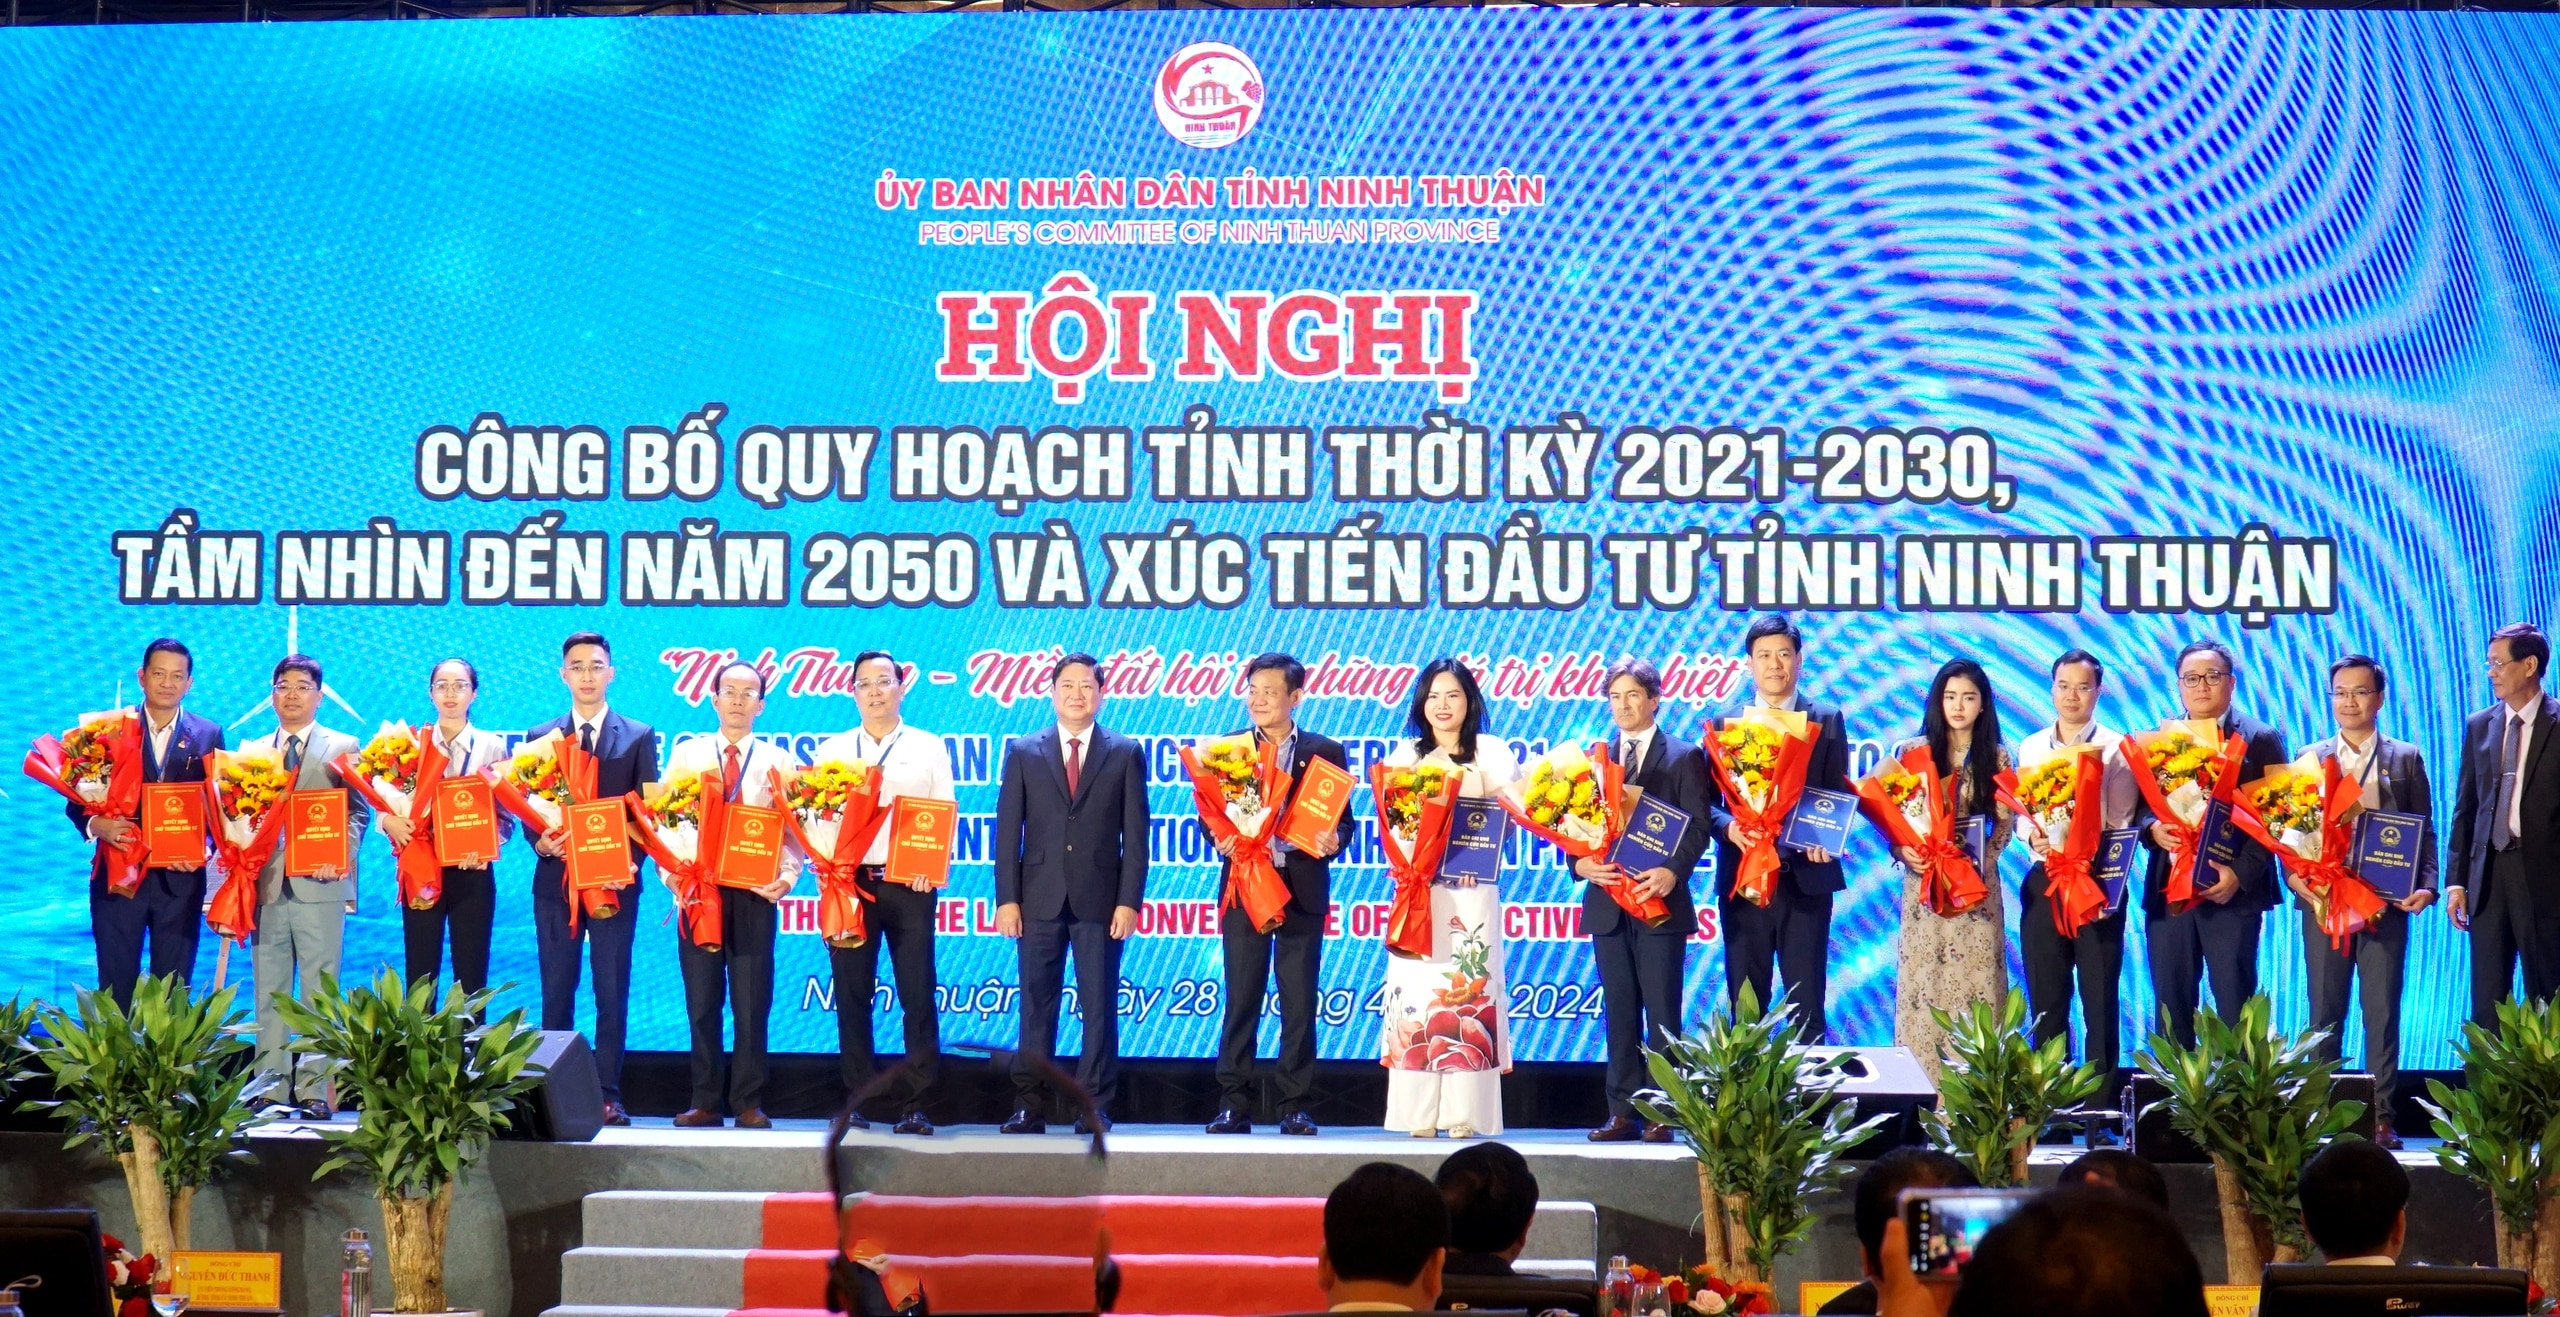 En la conferencia, el Comité Popular de la provincia de Ninh Thuan otorgó 7 certificados de registro de inversiones y 7 memorandos de investigación y desarrollo de proyectos con un capital de inversión total esperado de más de 120.000 billones de VND a 14 inversores nacionales y extranjeros.